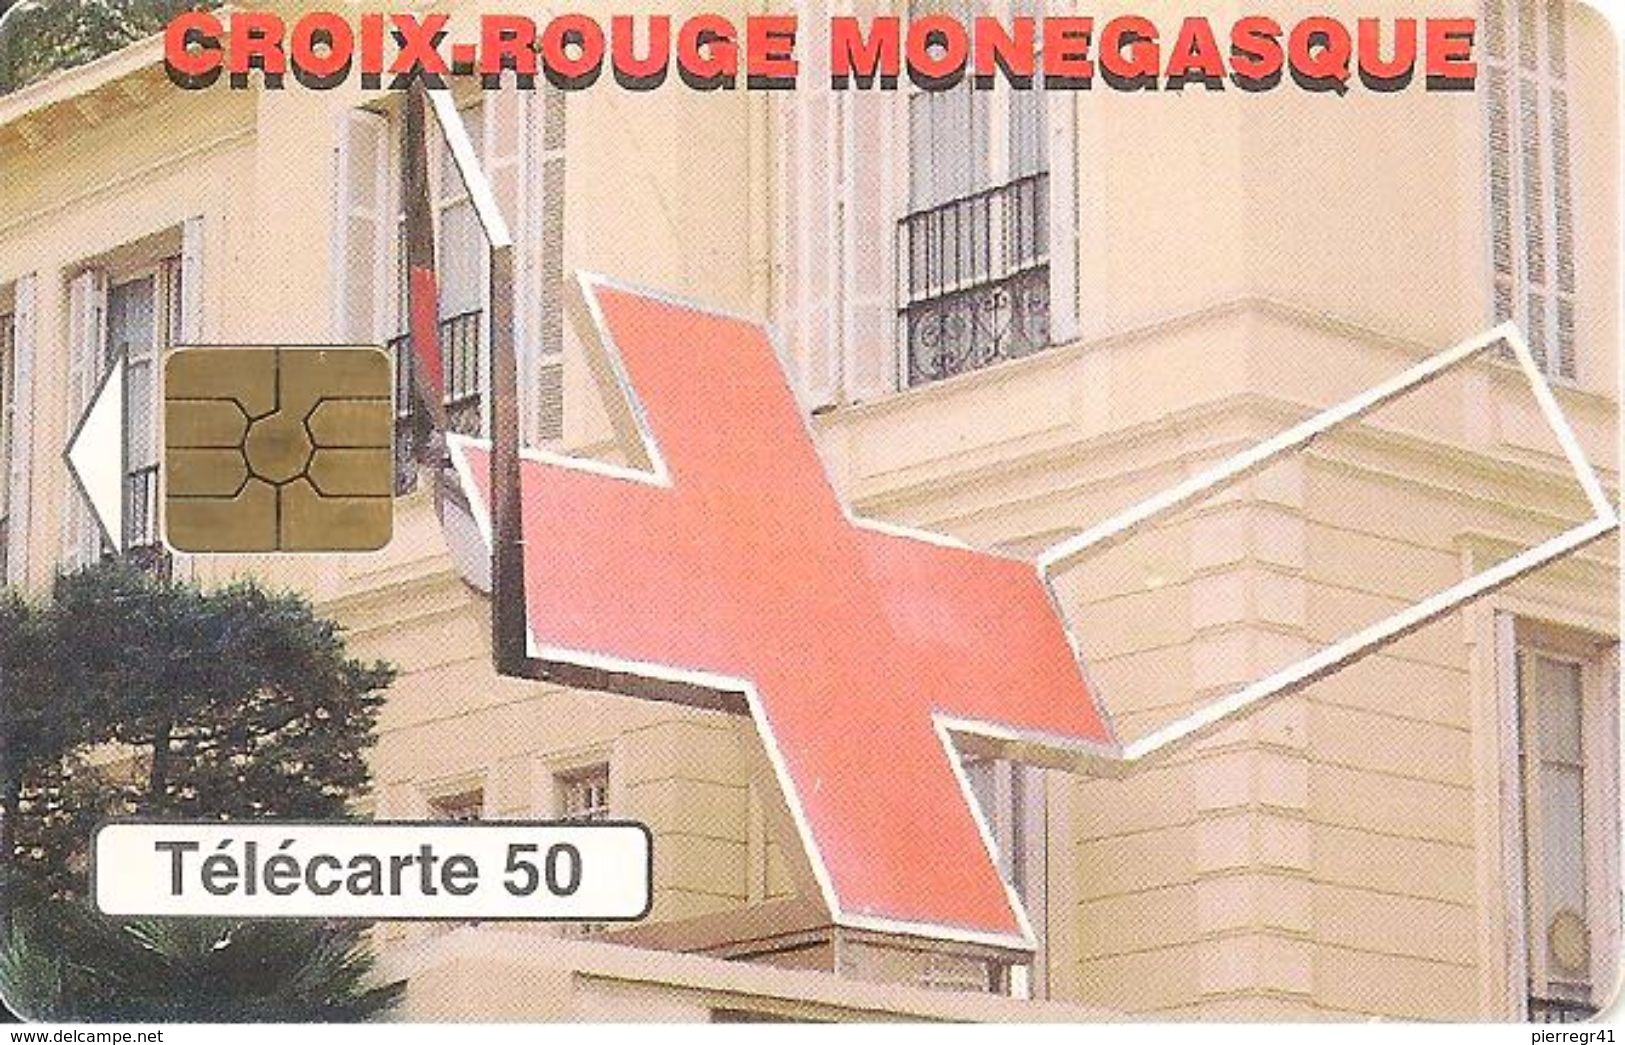 CARTE°-PUBLIC-MONACO-50U-MF48-GEM2-04/98-CROIX ROUGE-Série N° B83433004-UTILISE-BE - Monace